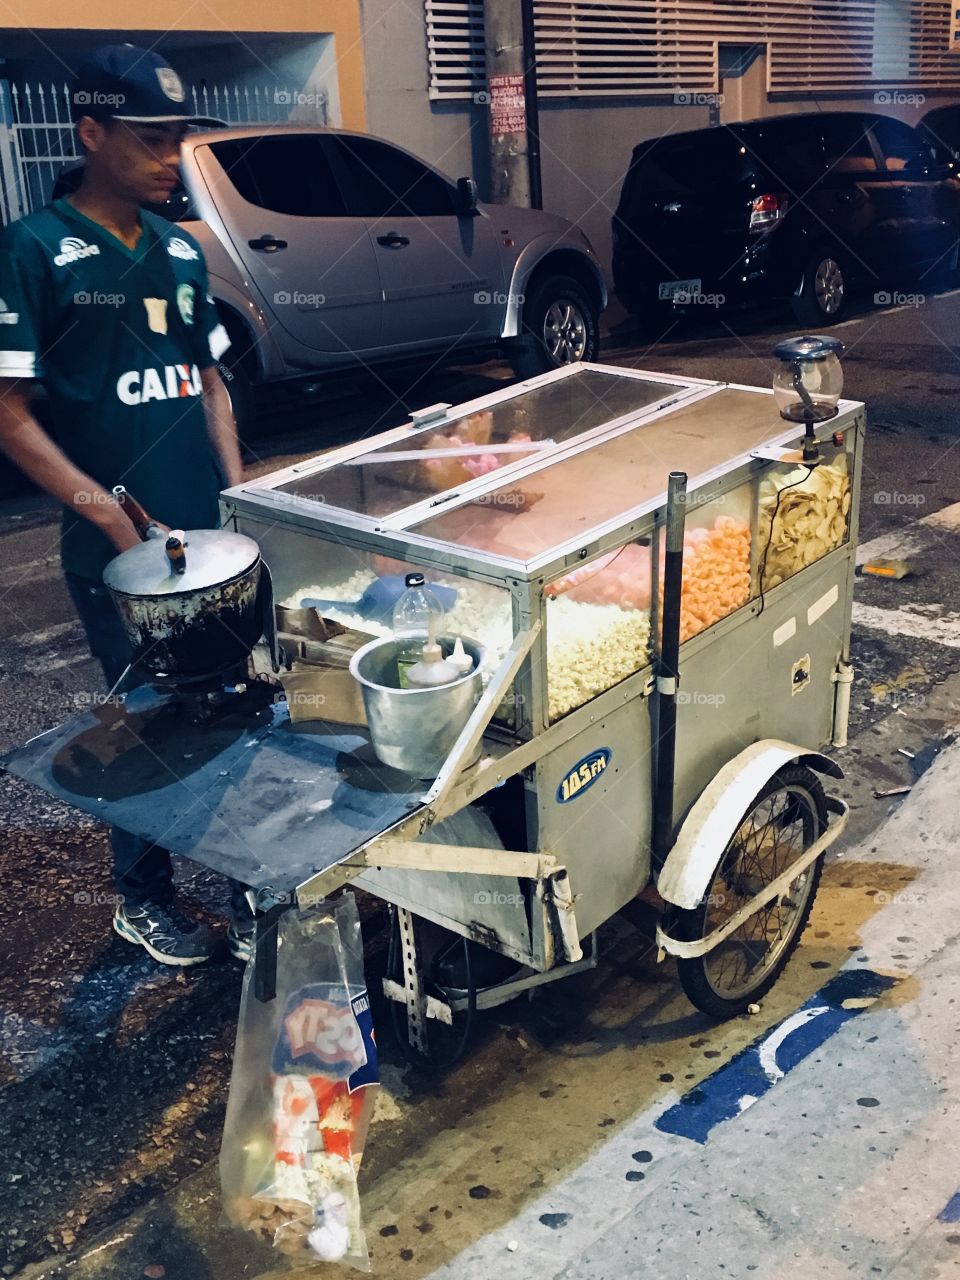 Um esforçado pipoqueiro e seu carrinho no meio da noite. Há pessoas esforçadas nesse Brasil, que merecem atenção e respeito. 